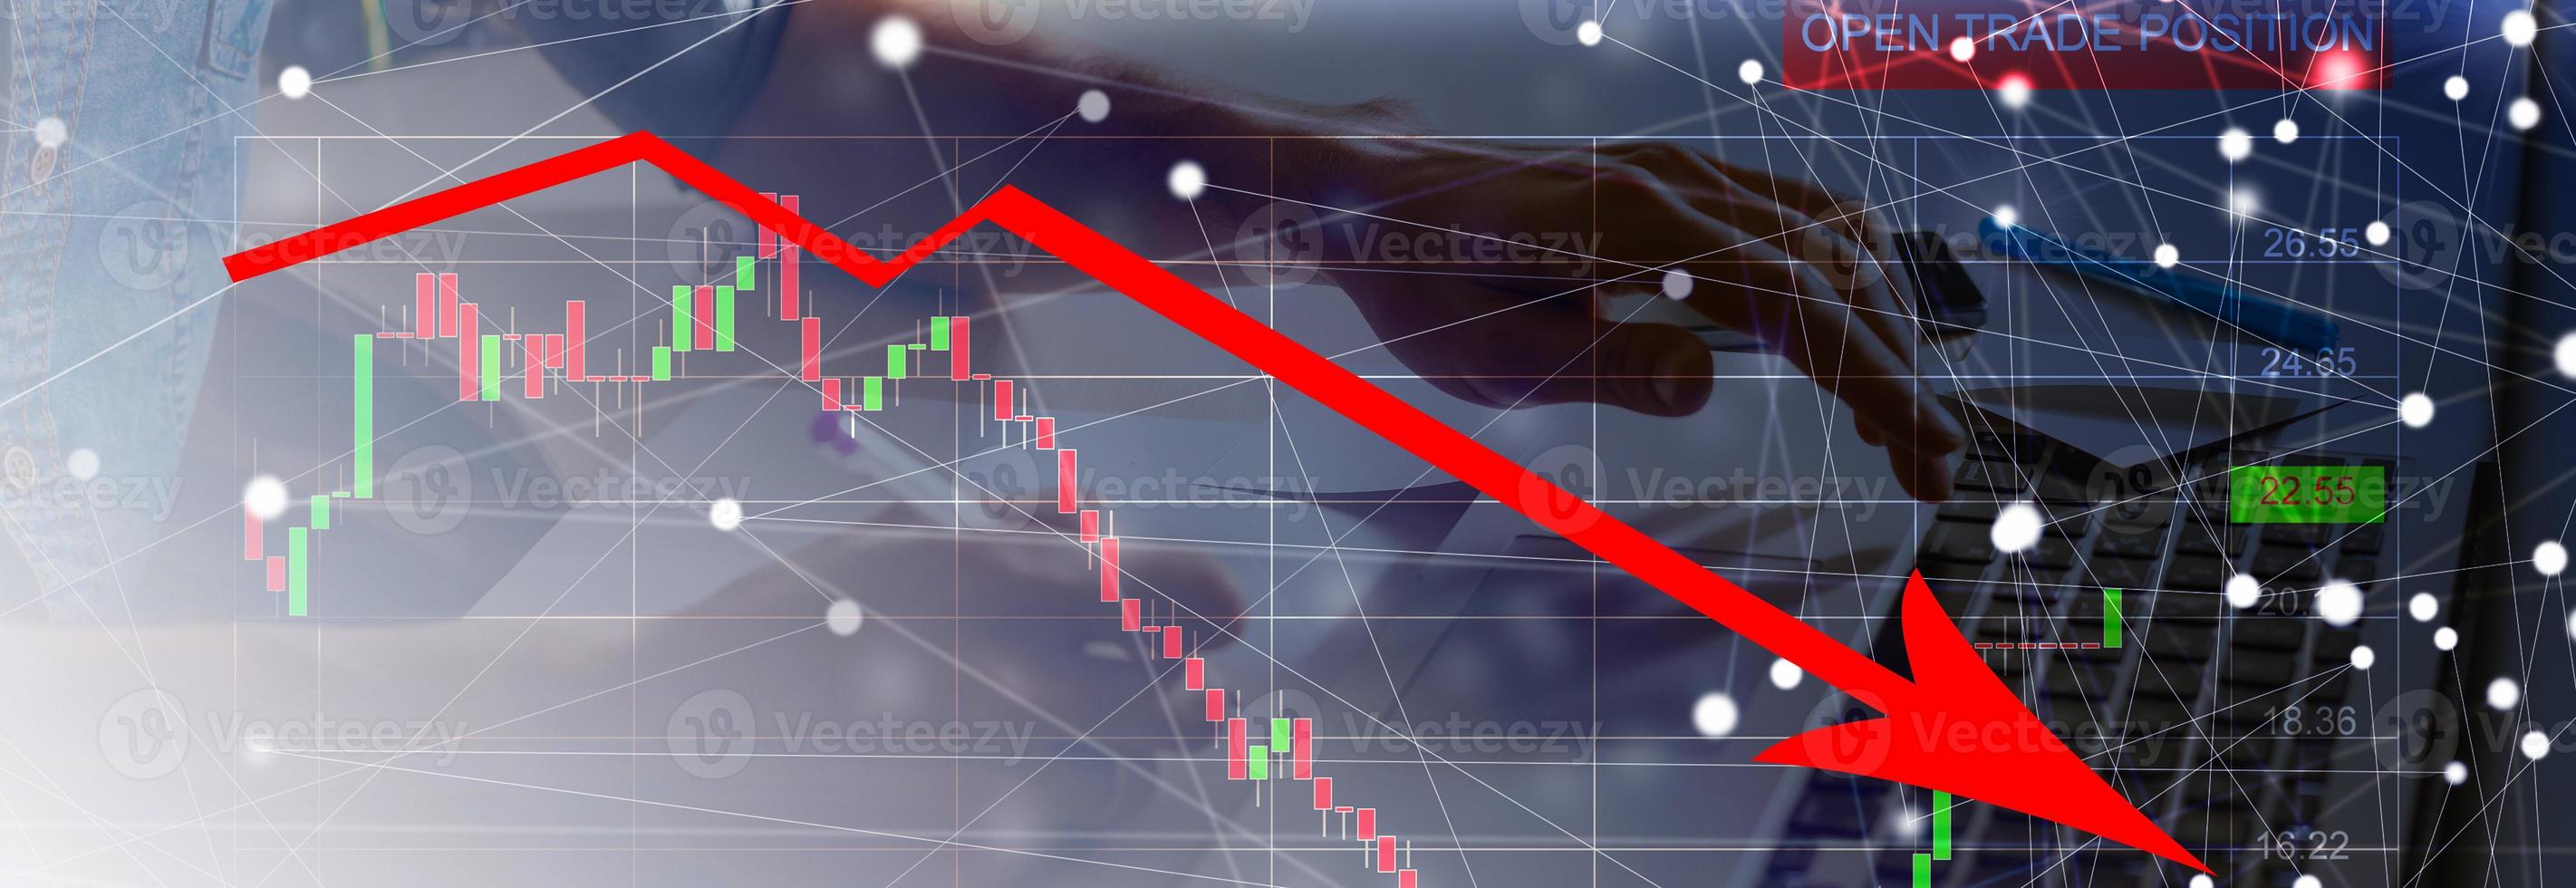 de economisch crisis van 2020. rood pijlen vallen naar de grond, wijzend op de economisch recessie dat zullen optreden in 2020. foto